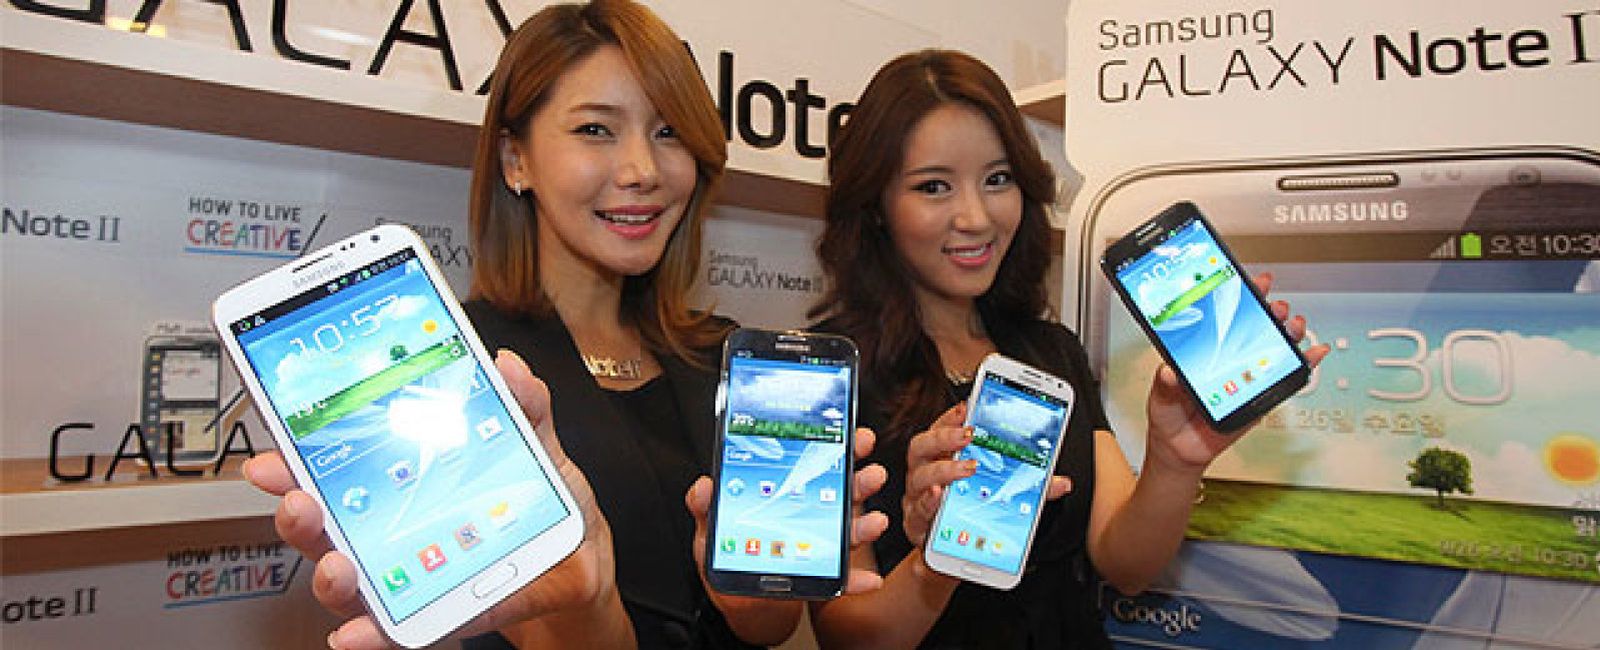 Foto: Samsung logra unos beneficios históricos gracias al éxito de su gama Galaxy